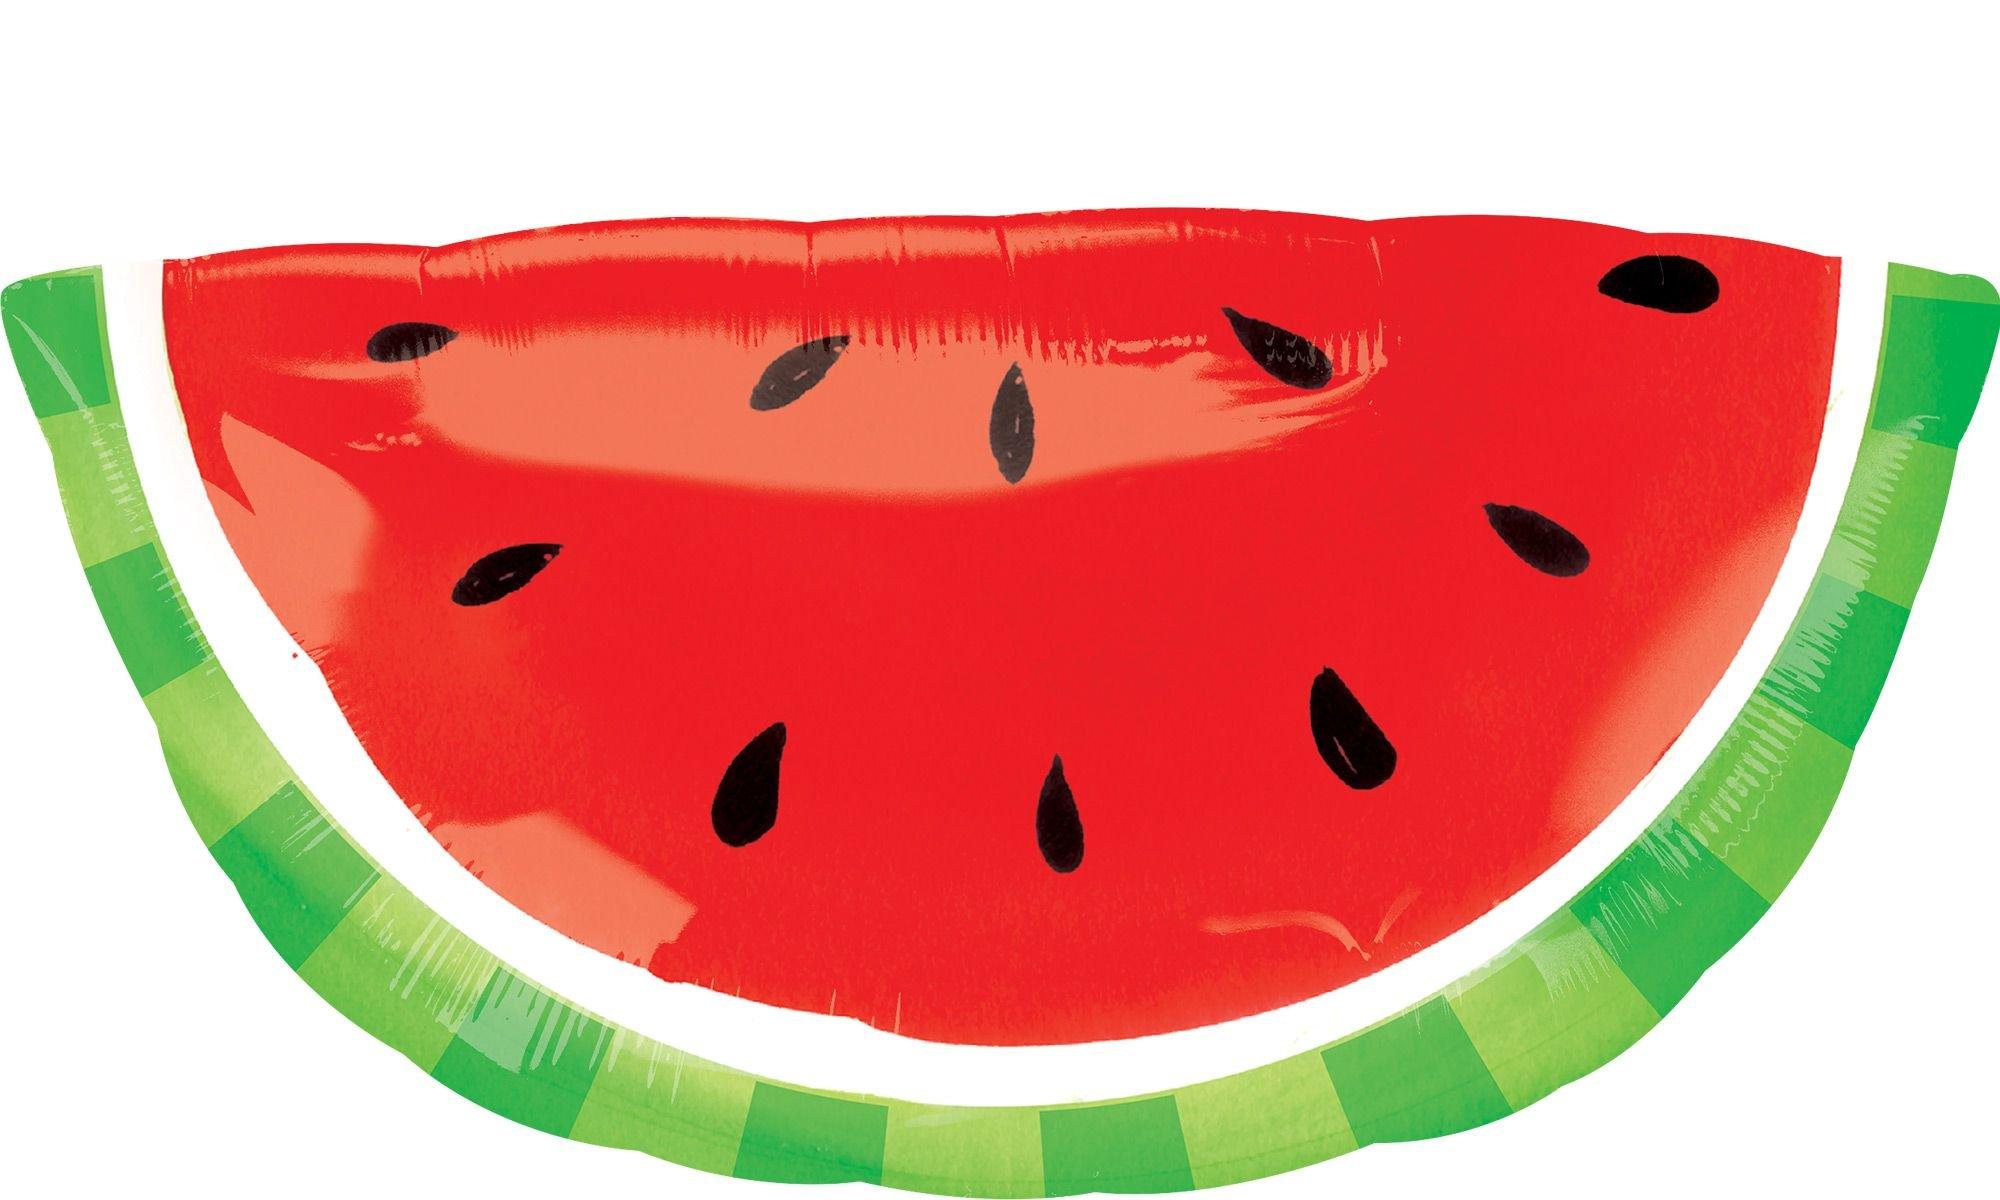 Watermelon Slice Foil Balloon, 36in wide x 23in